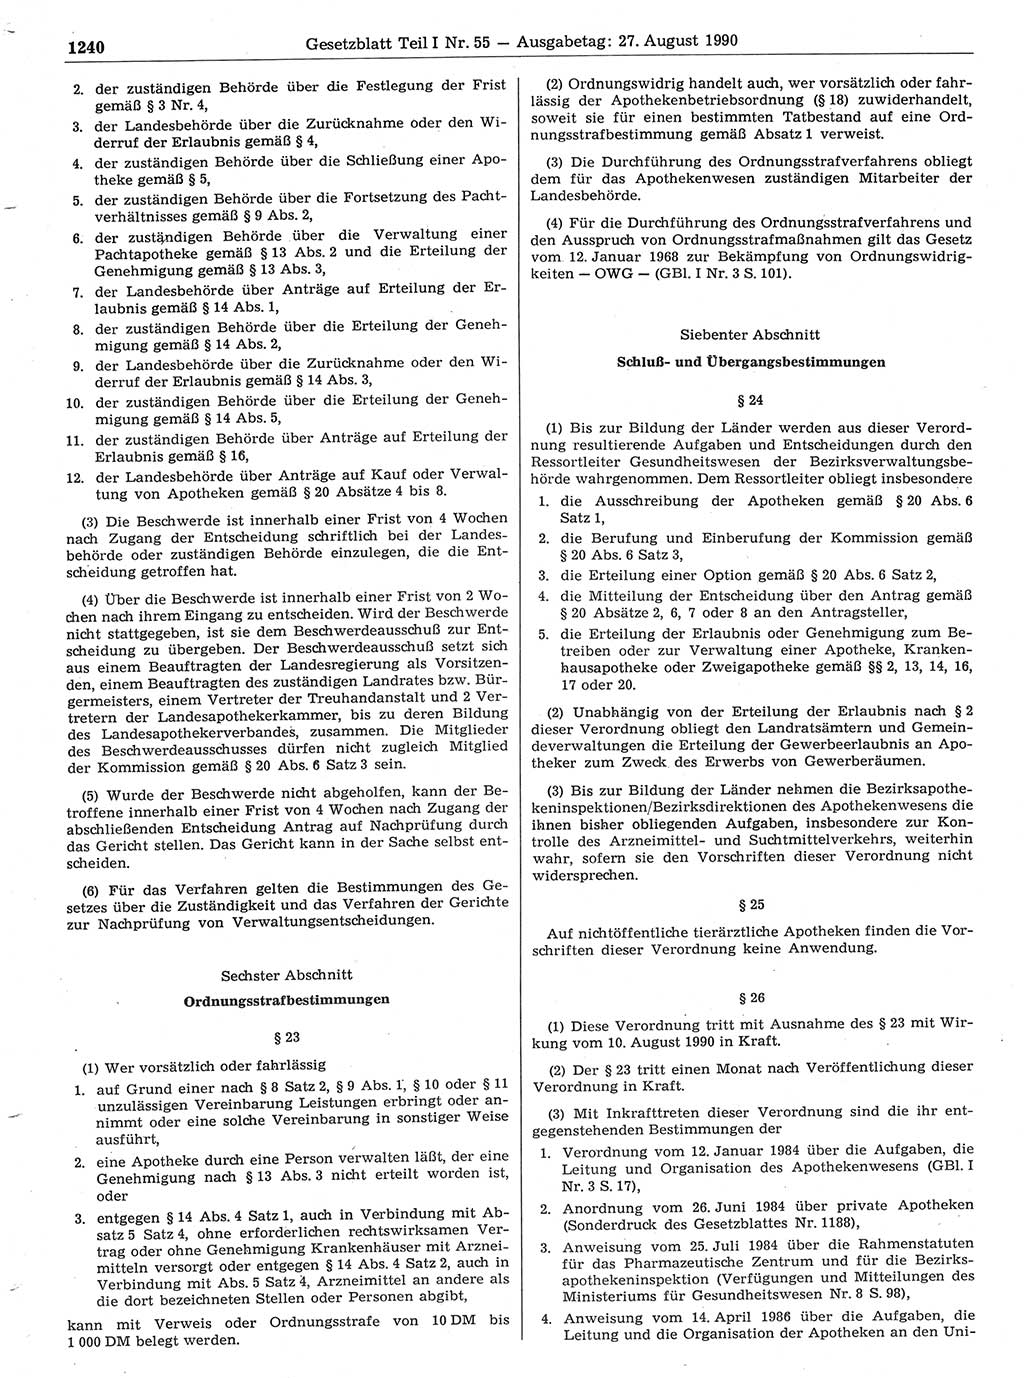 Gesetzblatt (GBl.) der Deutschen Demokratischen Republik (DDR) Teil Ⅰ 1990, Seite 1240 (GBl. DDR Ⅰ 1990, S. 1240)